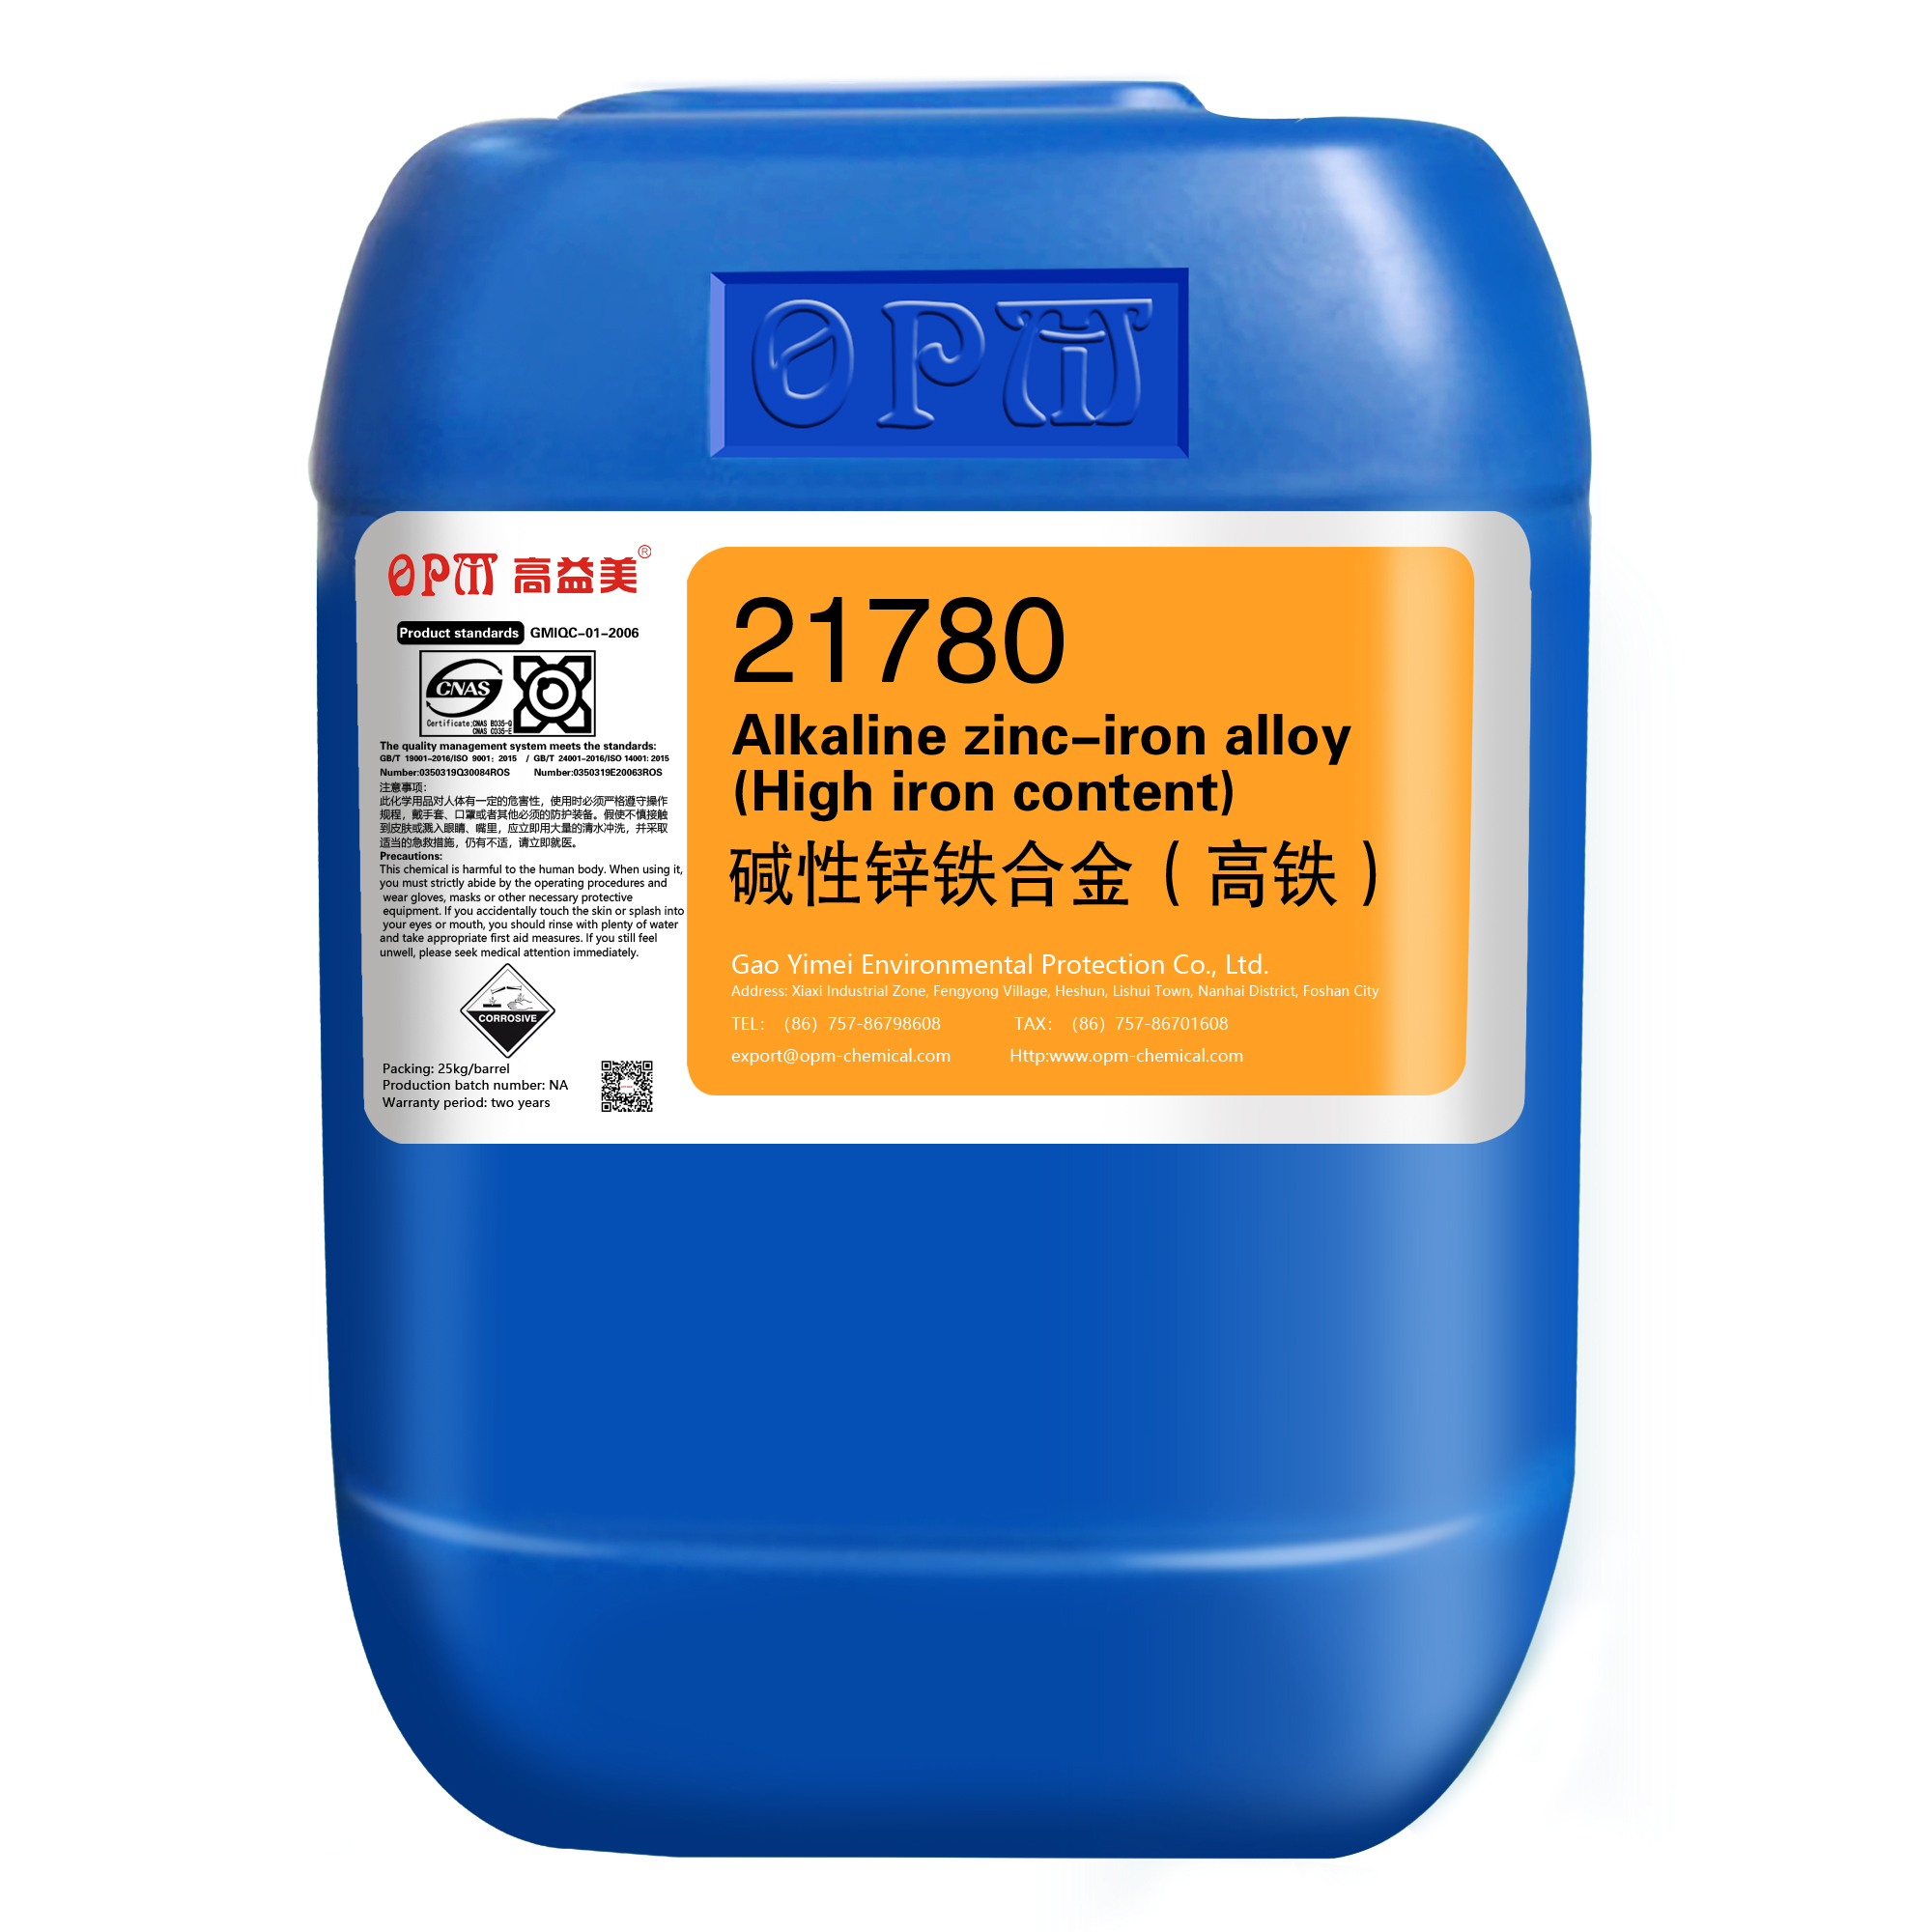 21780alkaline zinc-iron alloy(High iron content)